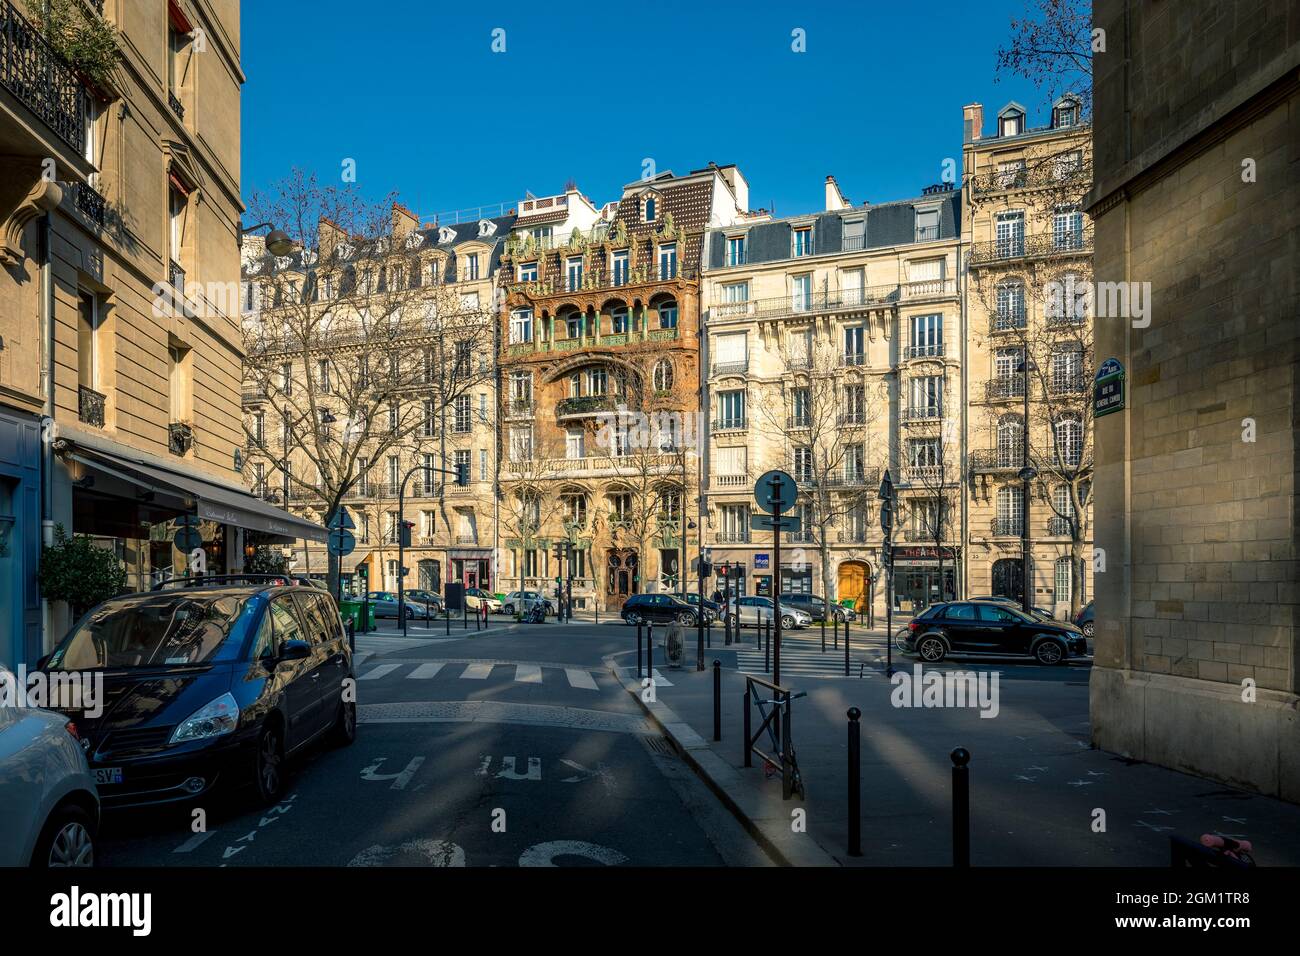 Paris, France - March 8, 2021: The magnificent art nouveau Lavirotte building on Rapp Avenue in Paris Stock Photo